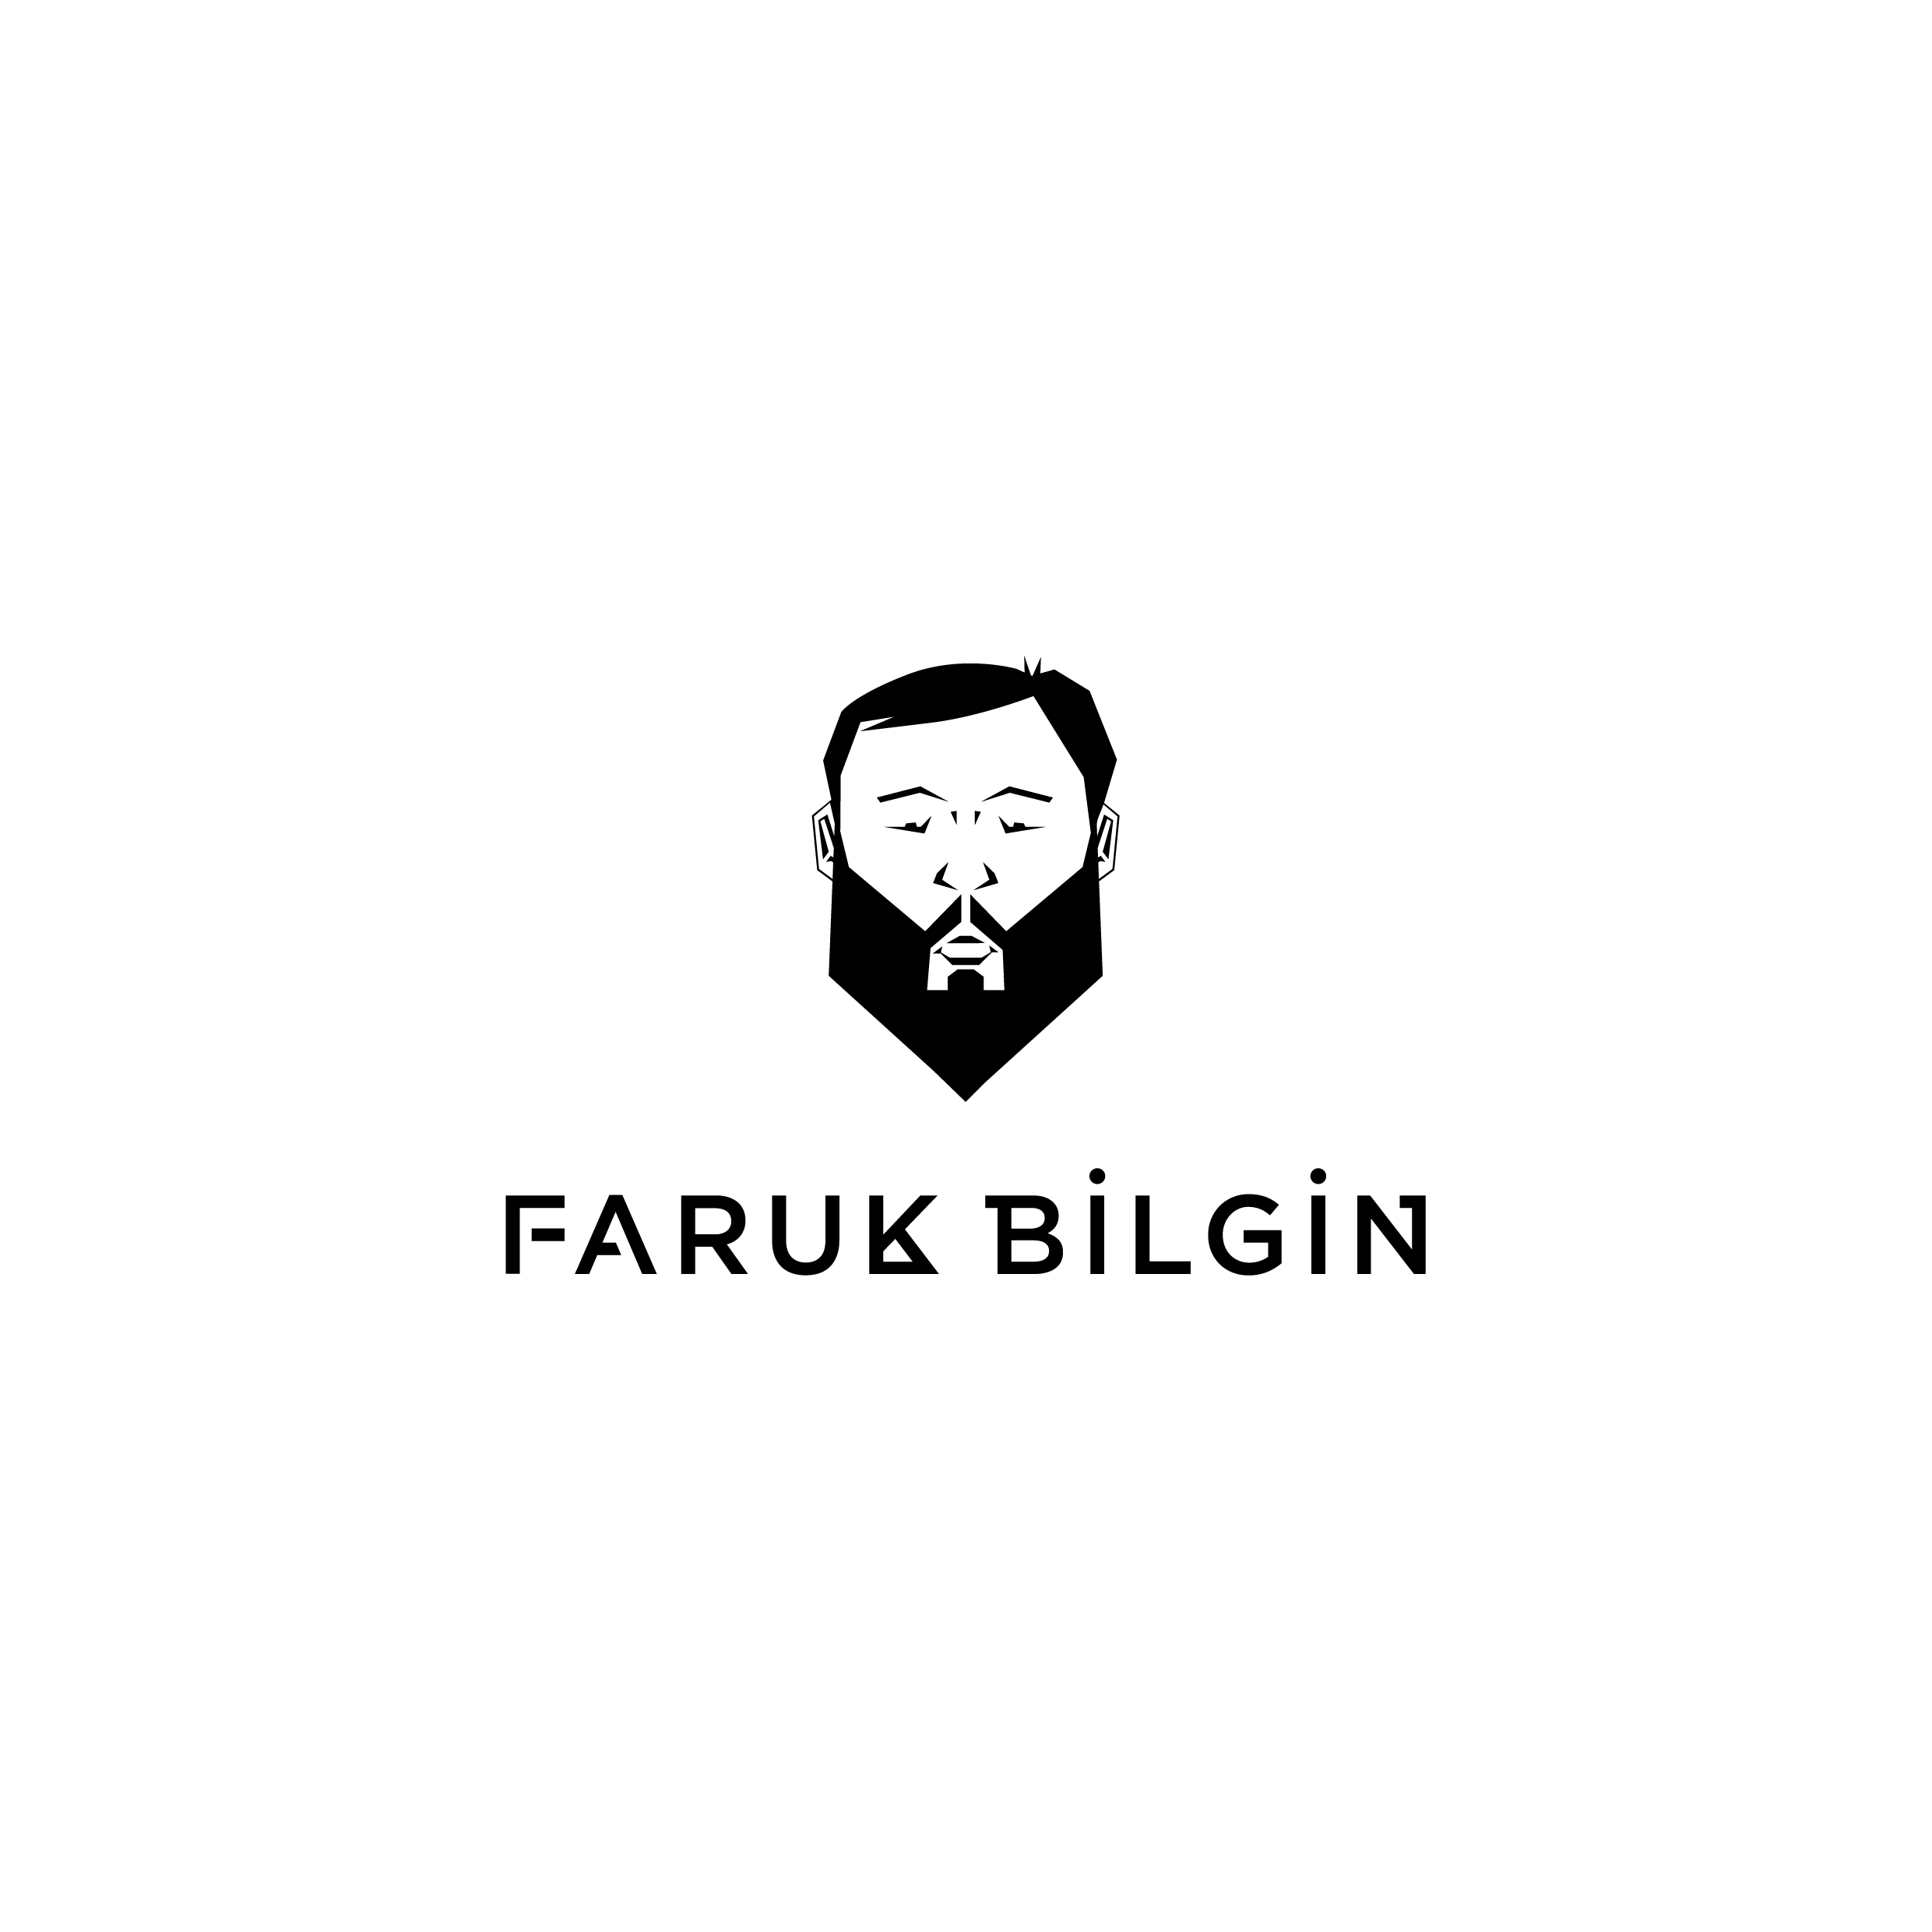 FARUK_BILGIN_LOGO_21x21cm_1